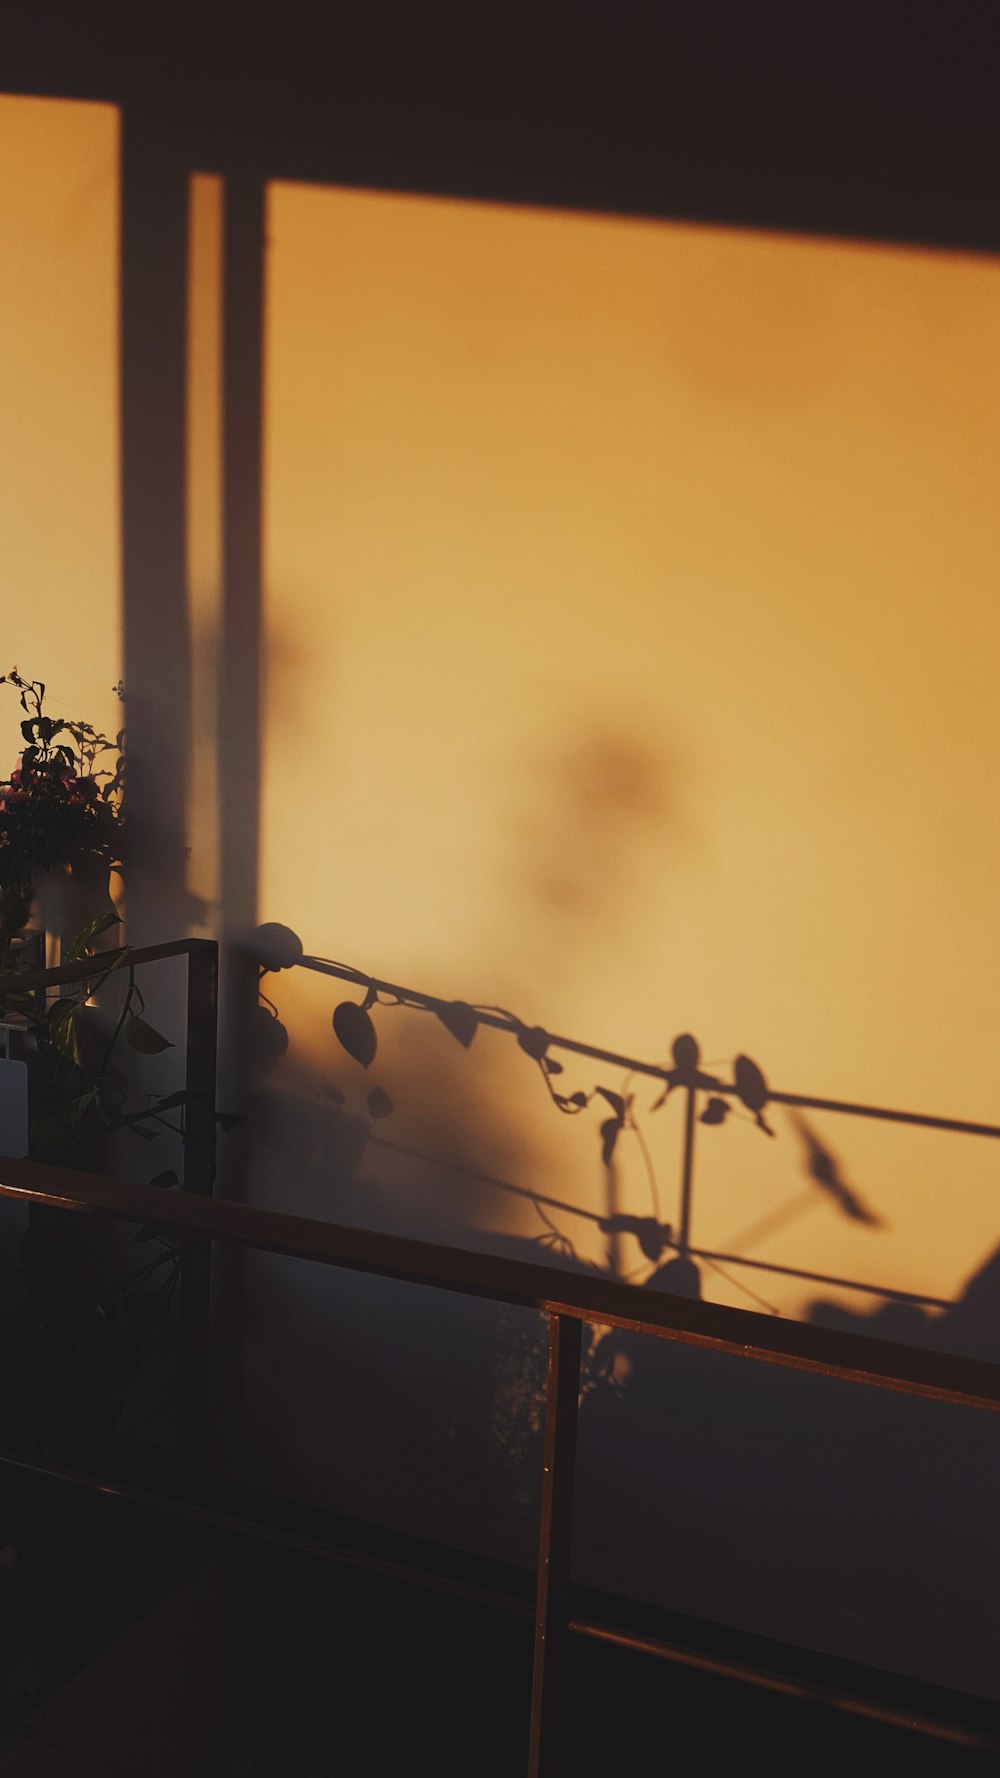 la silhouette d’une personne sur un balcon